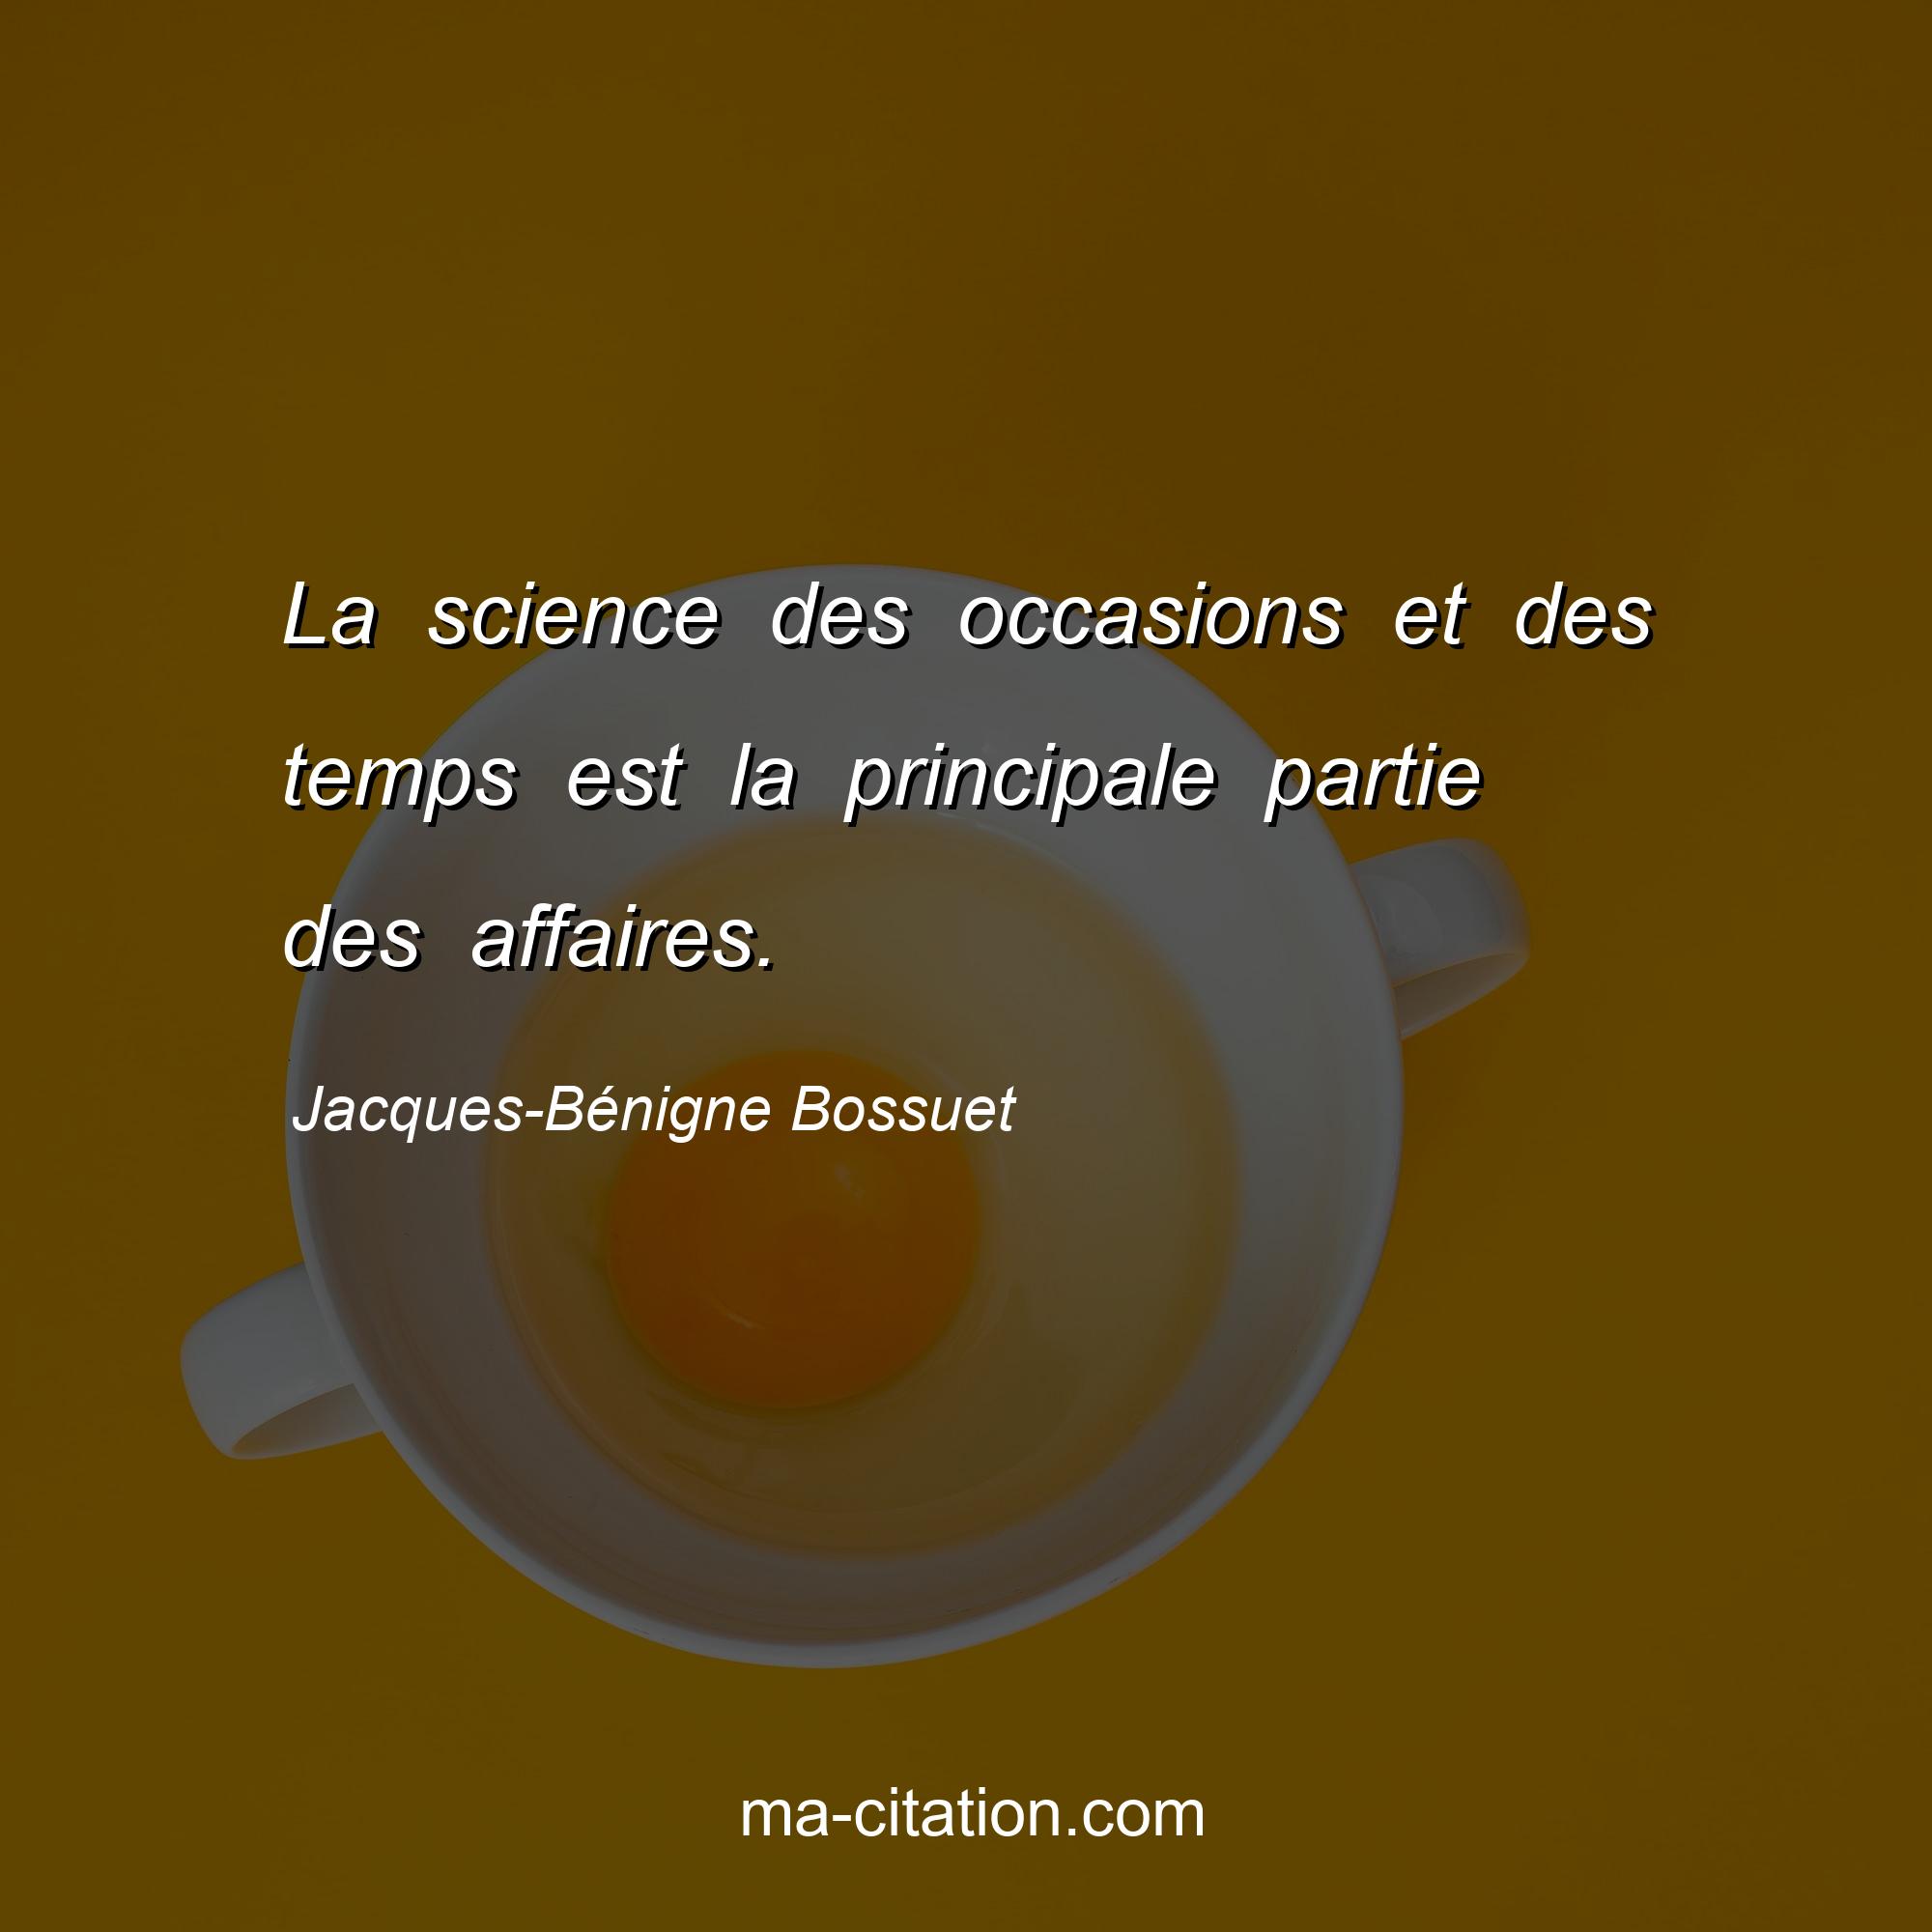 Jacques-Bénigne Bossuet : La science des occasions et des temps est la principale partie des affaires.